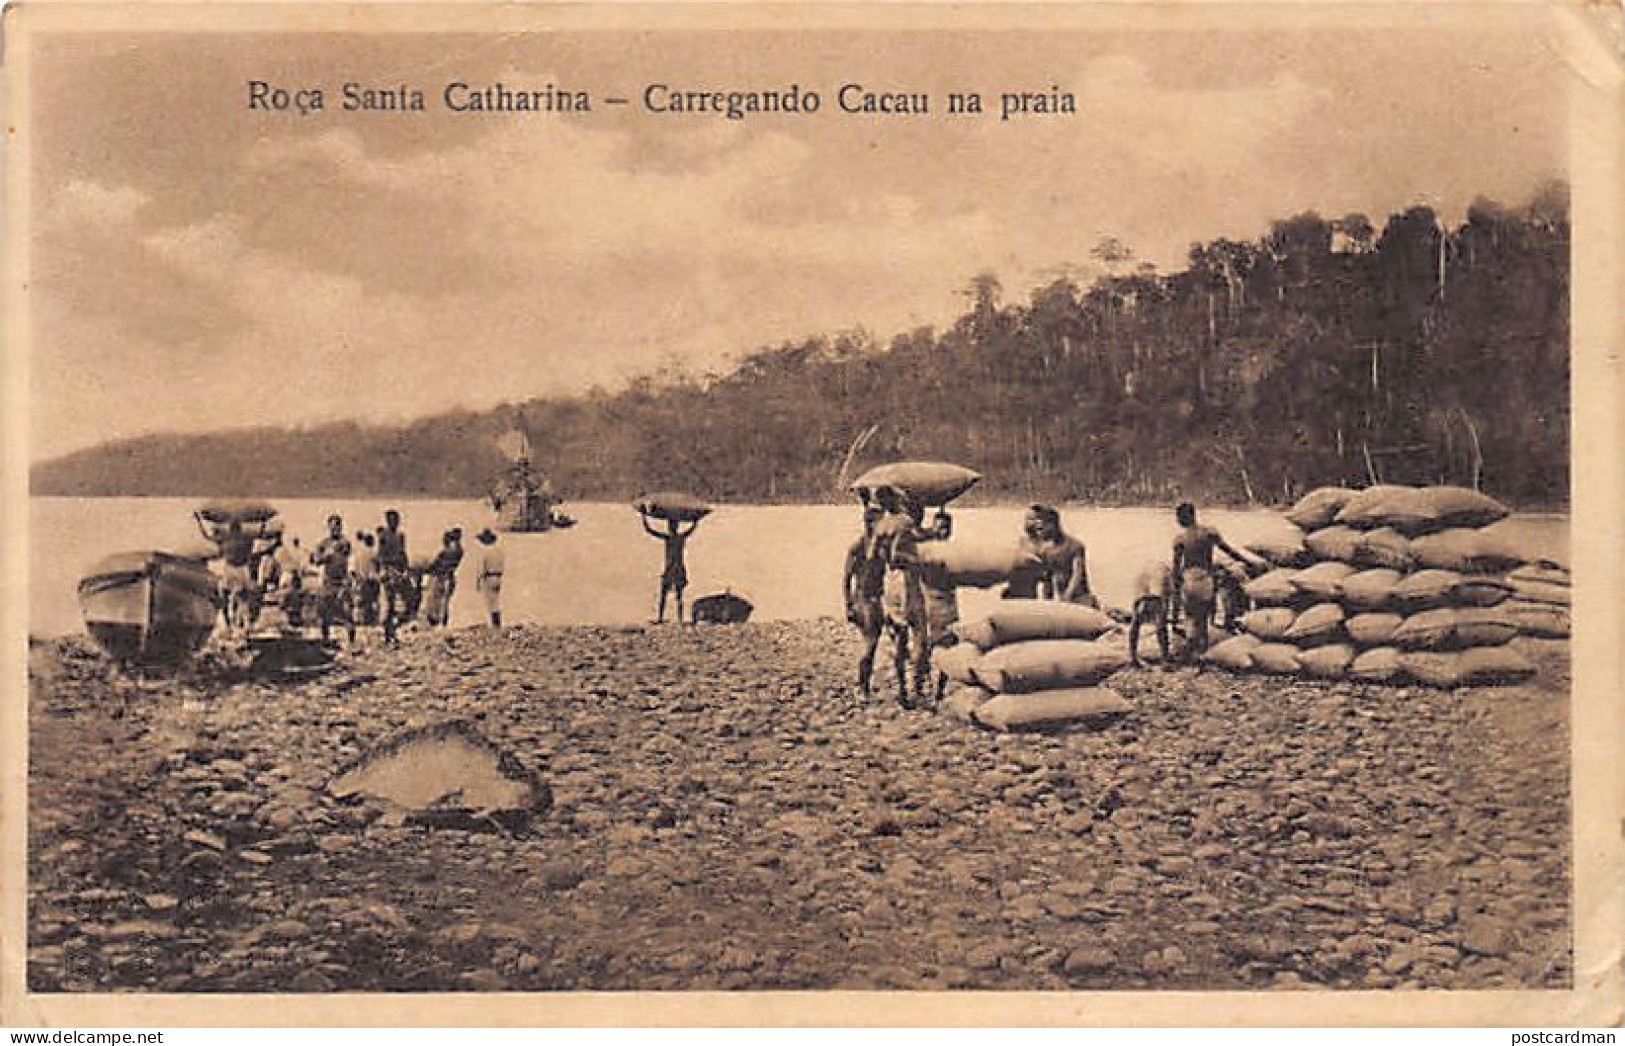 SAO TOME - Santa Catharina Farm - Loading Cocoa On The Beach. - Sao Tome And Principe